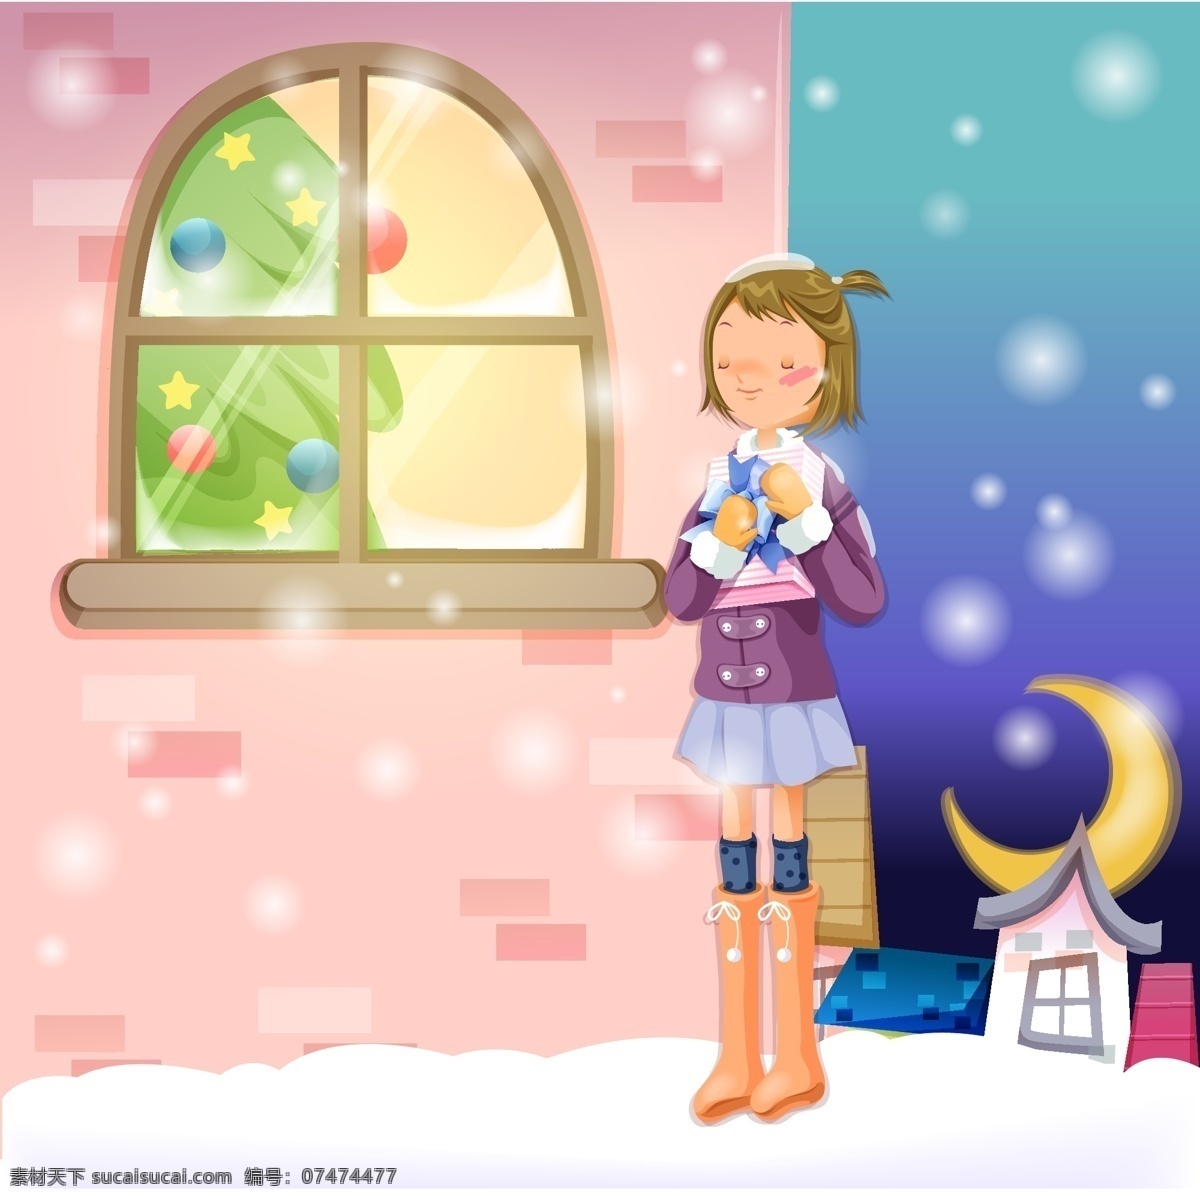 女孩 抱 礼物 站 窗外 矢量 城市 窗户 灯光 圣诞节 圣诞树 靴子 雪花 月亮 模板下载 矢量图 矢量人物